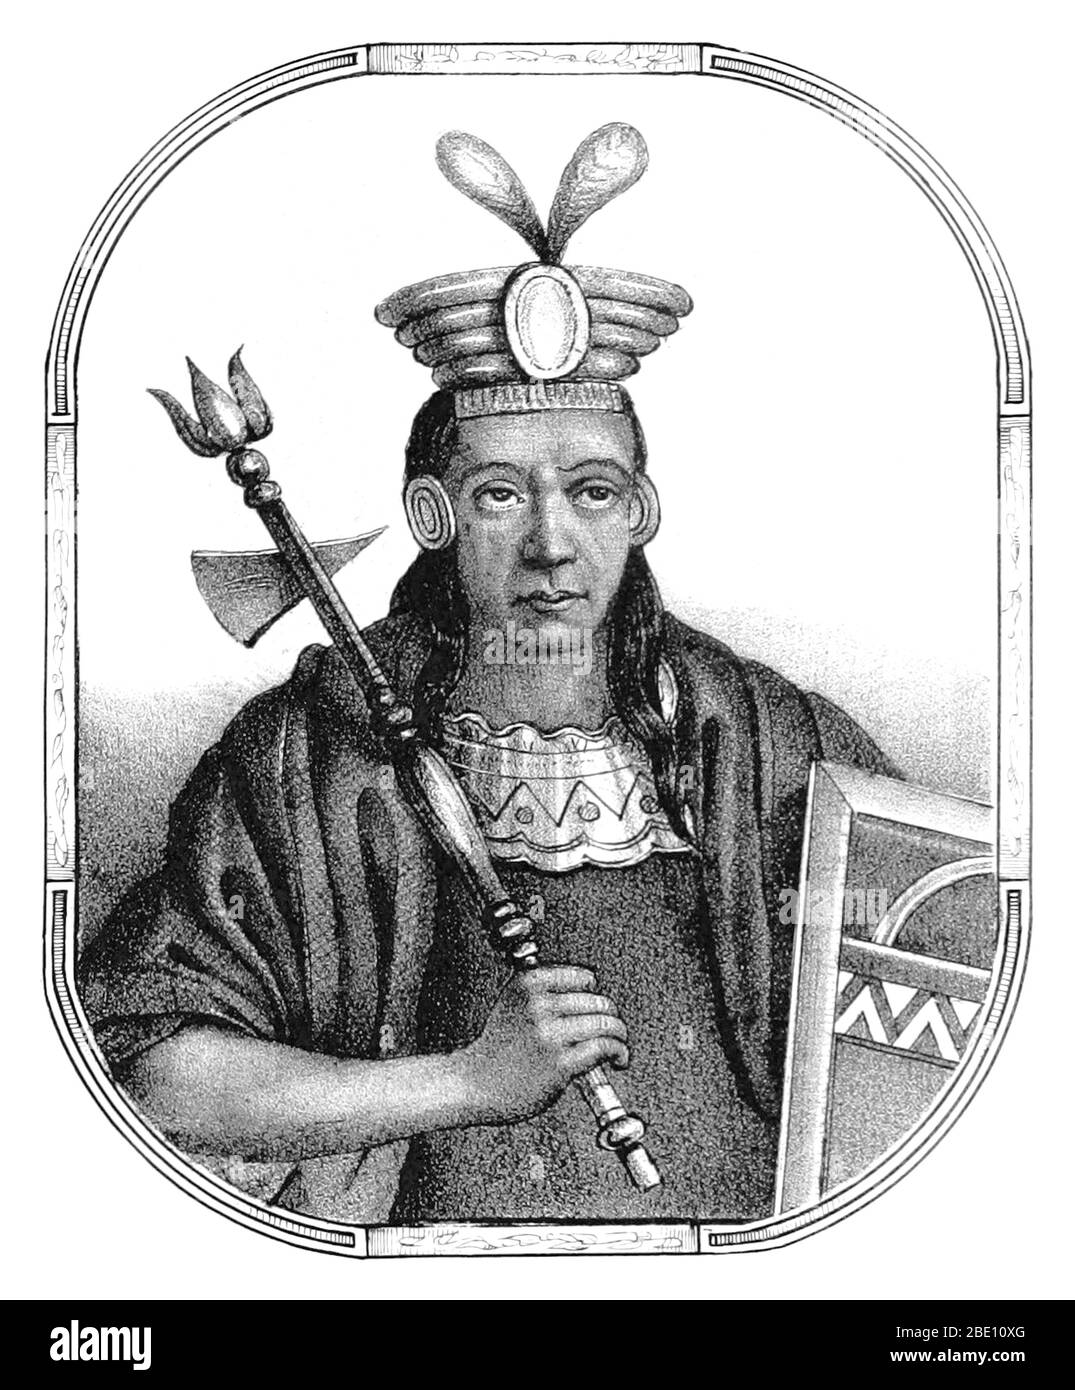 Mayta Cápac (Mayta Qhapaq Inka) war der vierte Sapa Inka des Königreichs Cuzco (ab ca. 1290) und Mitglied der Hurin-Dynastie. Die Chronisten beschreiben ihn als einen großen Krieger, der Gebiete bis zum Titicacasee, Arequipa und Potosí eroberte. Während in der Tat, sein Königreich war noch auf das Tal von Cuzco beschränkt. 1134 unterstellte Mayta Cápac die Regionen Arequipa und Moquegua unter die Kontrolle des Inka-Reiches. Seine große militärische Leistung war die Unterwerfung der Stämme Alcabisas und Culunchimas. Bild von Seite 59 von 'Recuerdos de la Monarquia Peruana, ó boquejo de la historia Stockfoto